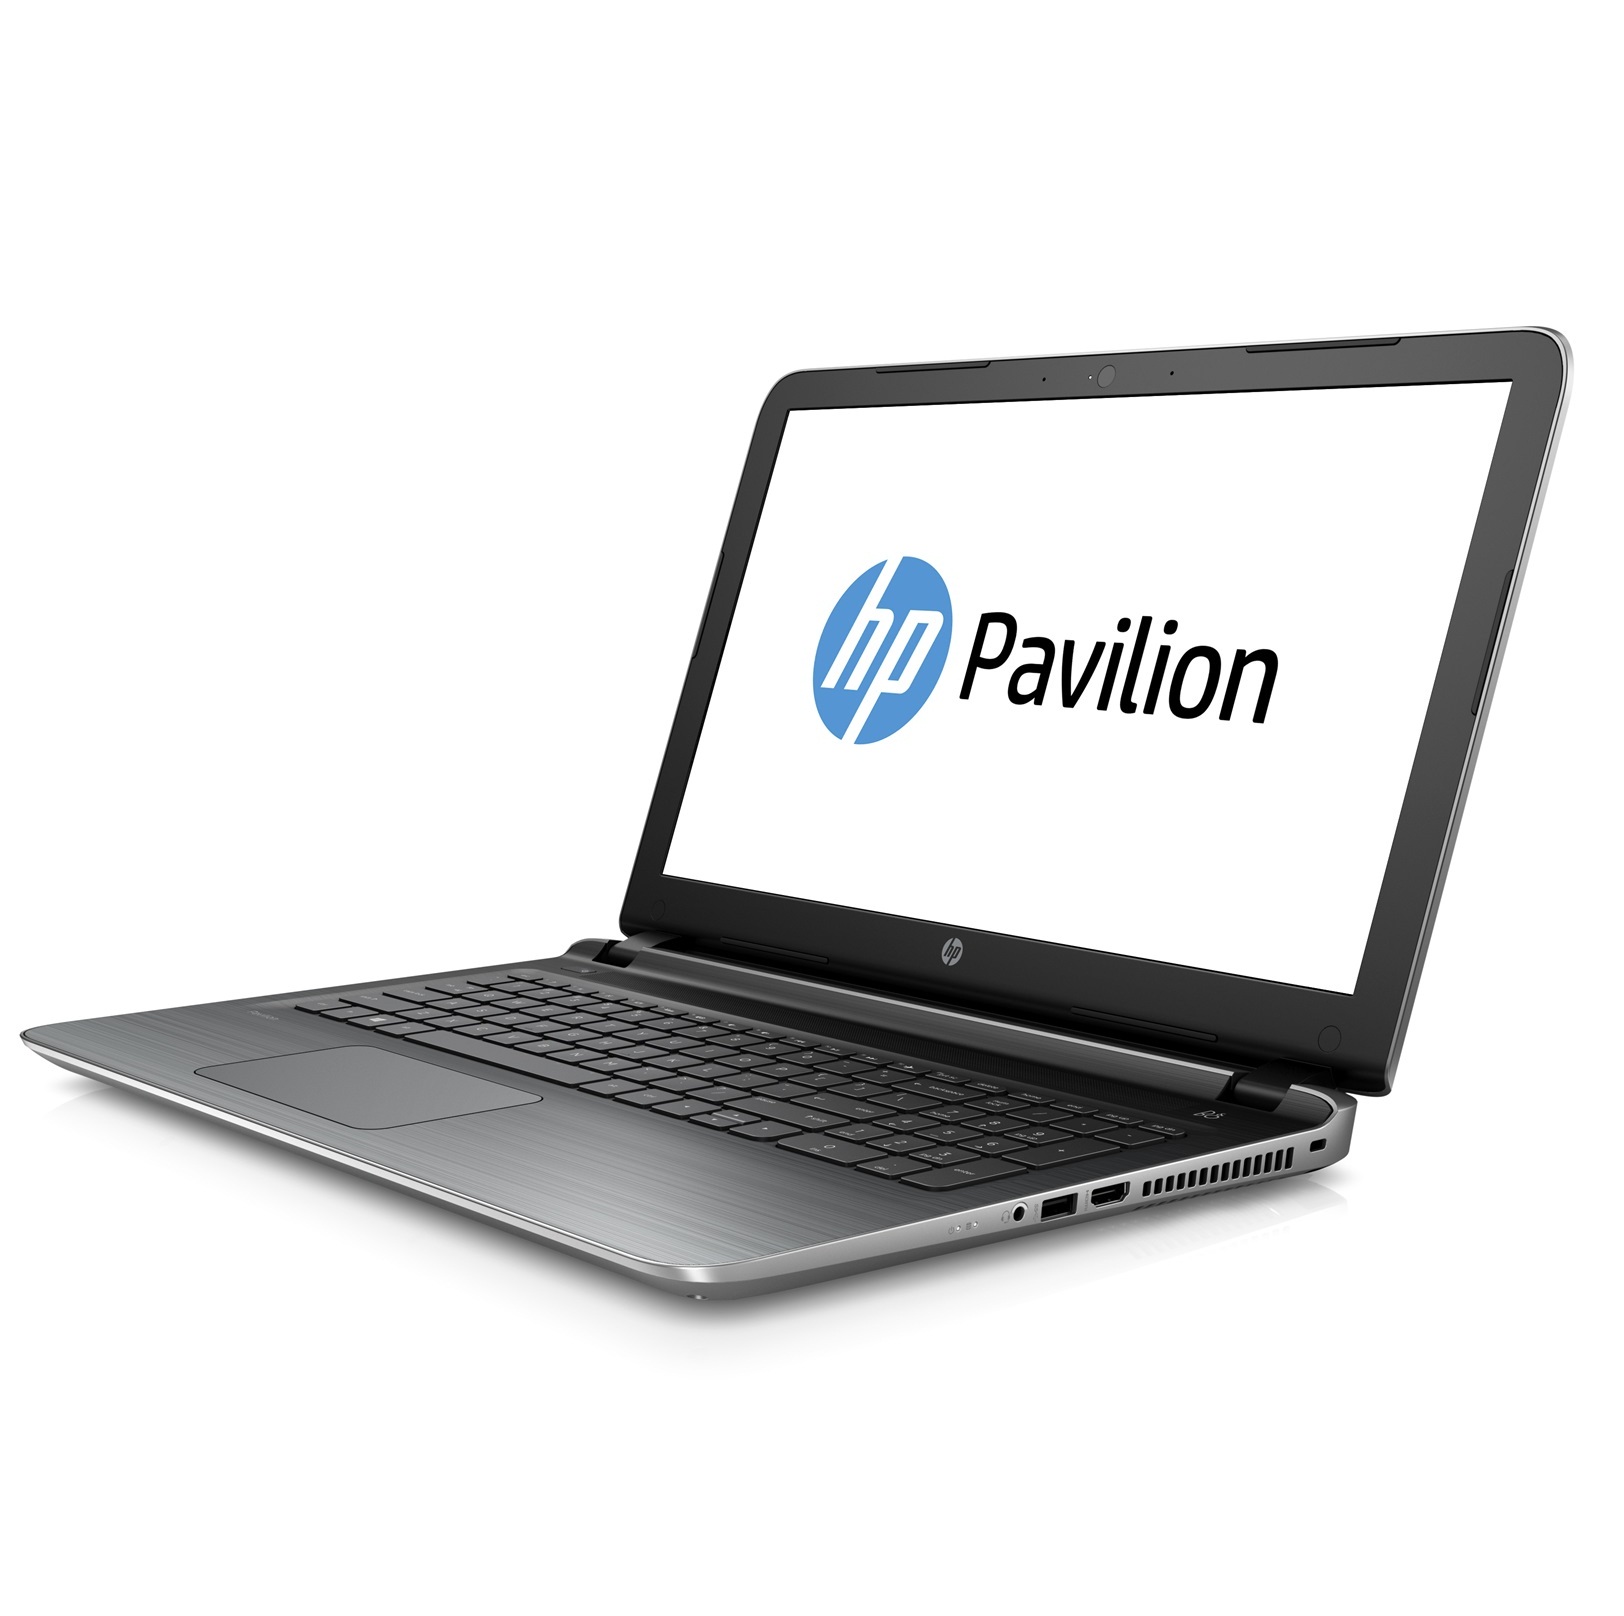 Laptop HP Core i5 Pavilion 15 ab221TU P3V35PA - Silver